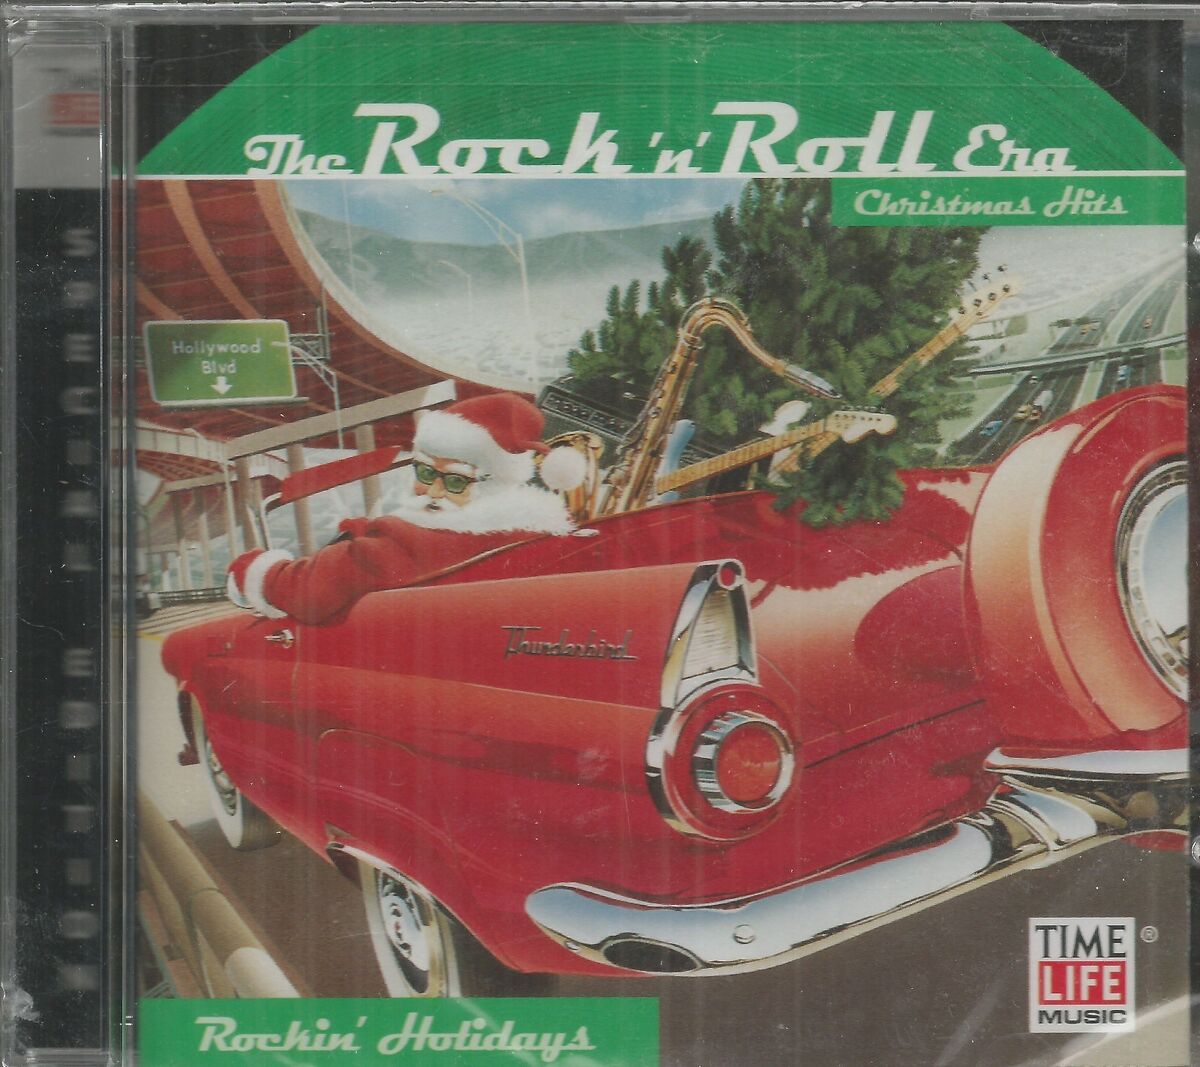 The Rock 'n' Roll Era: Rockin' Holidays